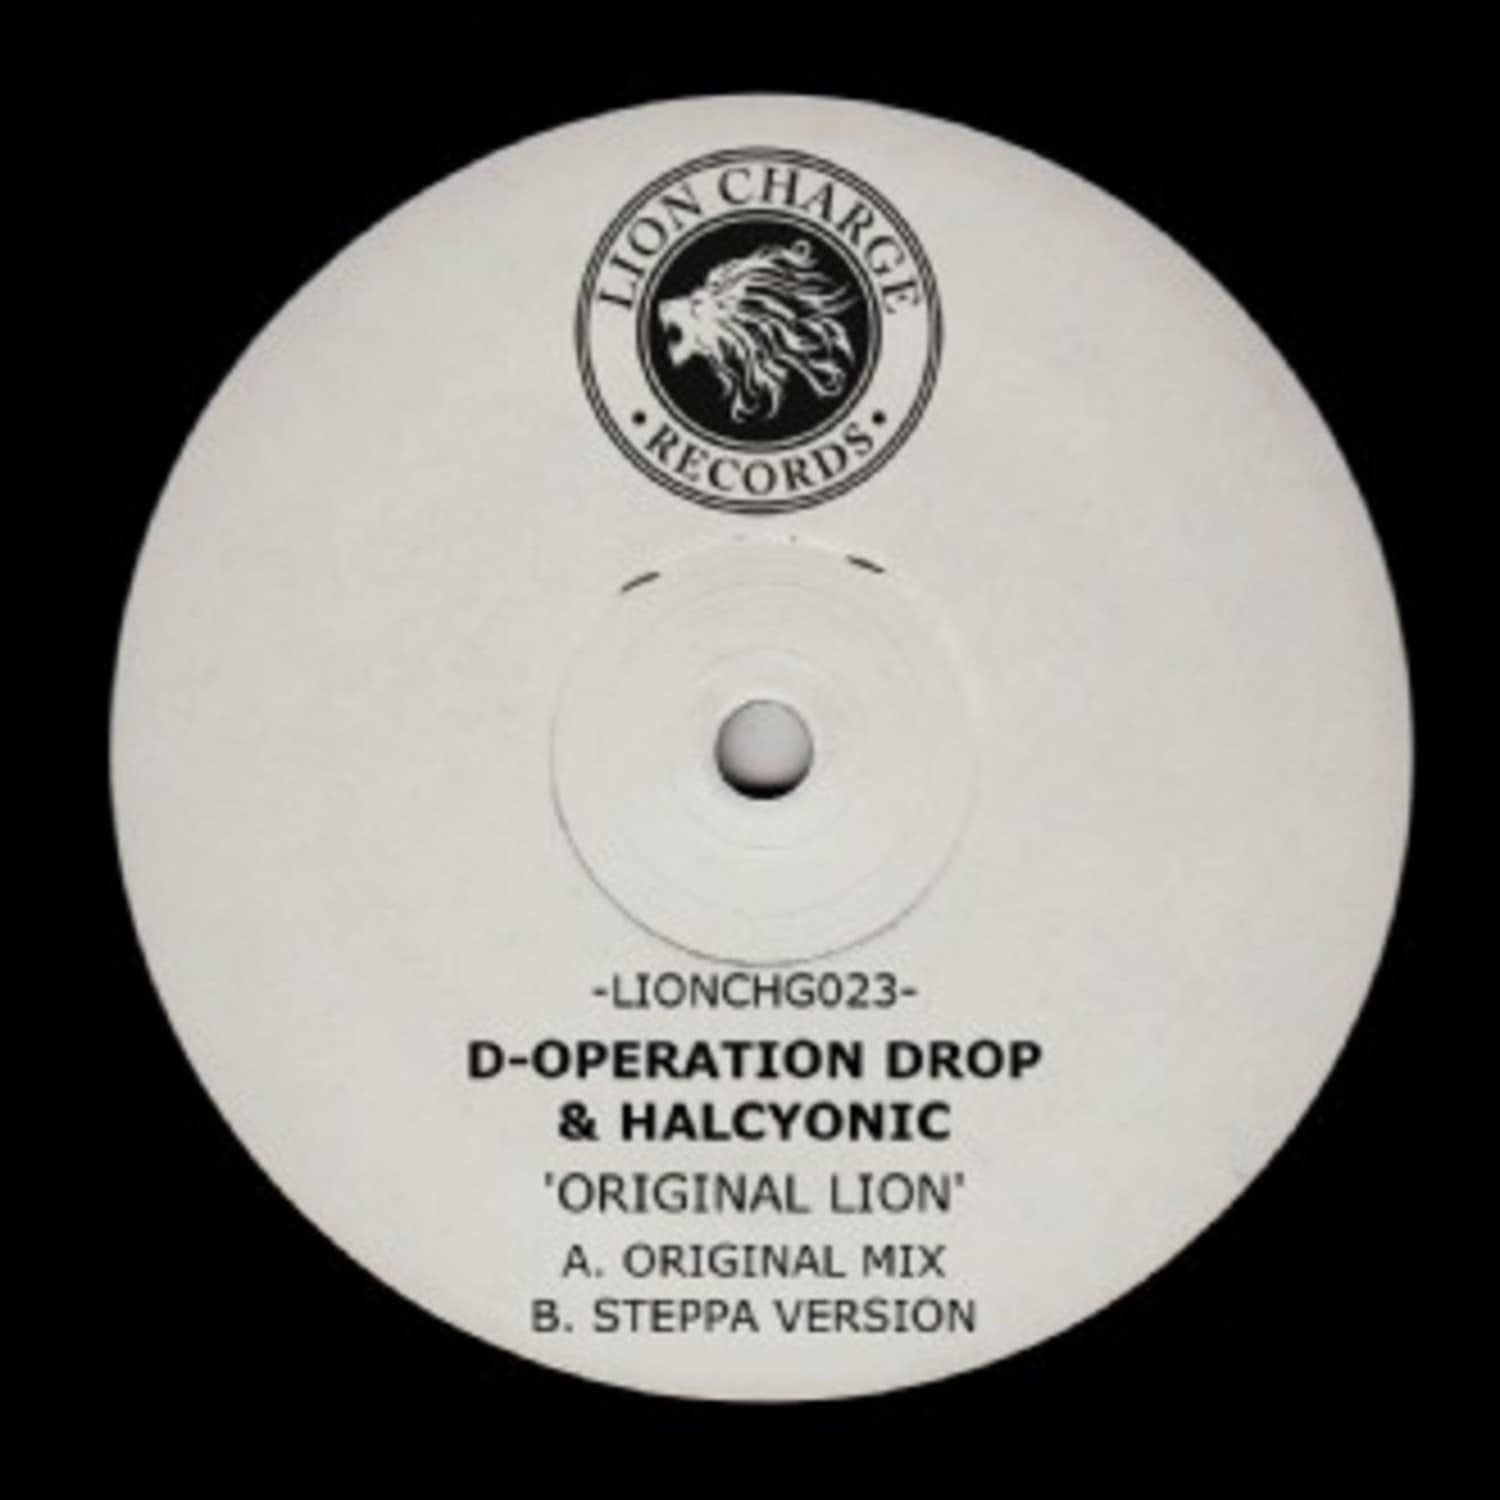 D-Operation Drop & Halcyonic - ORIGINAL LION